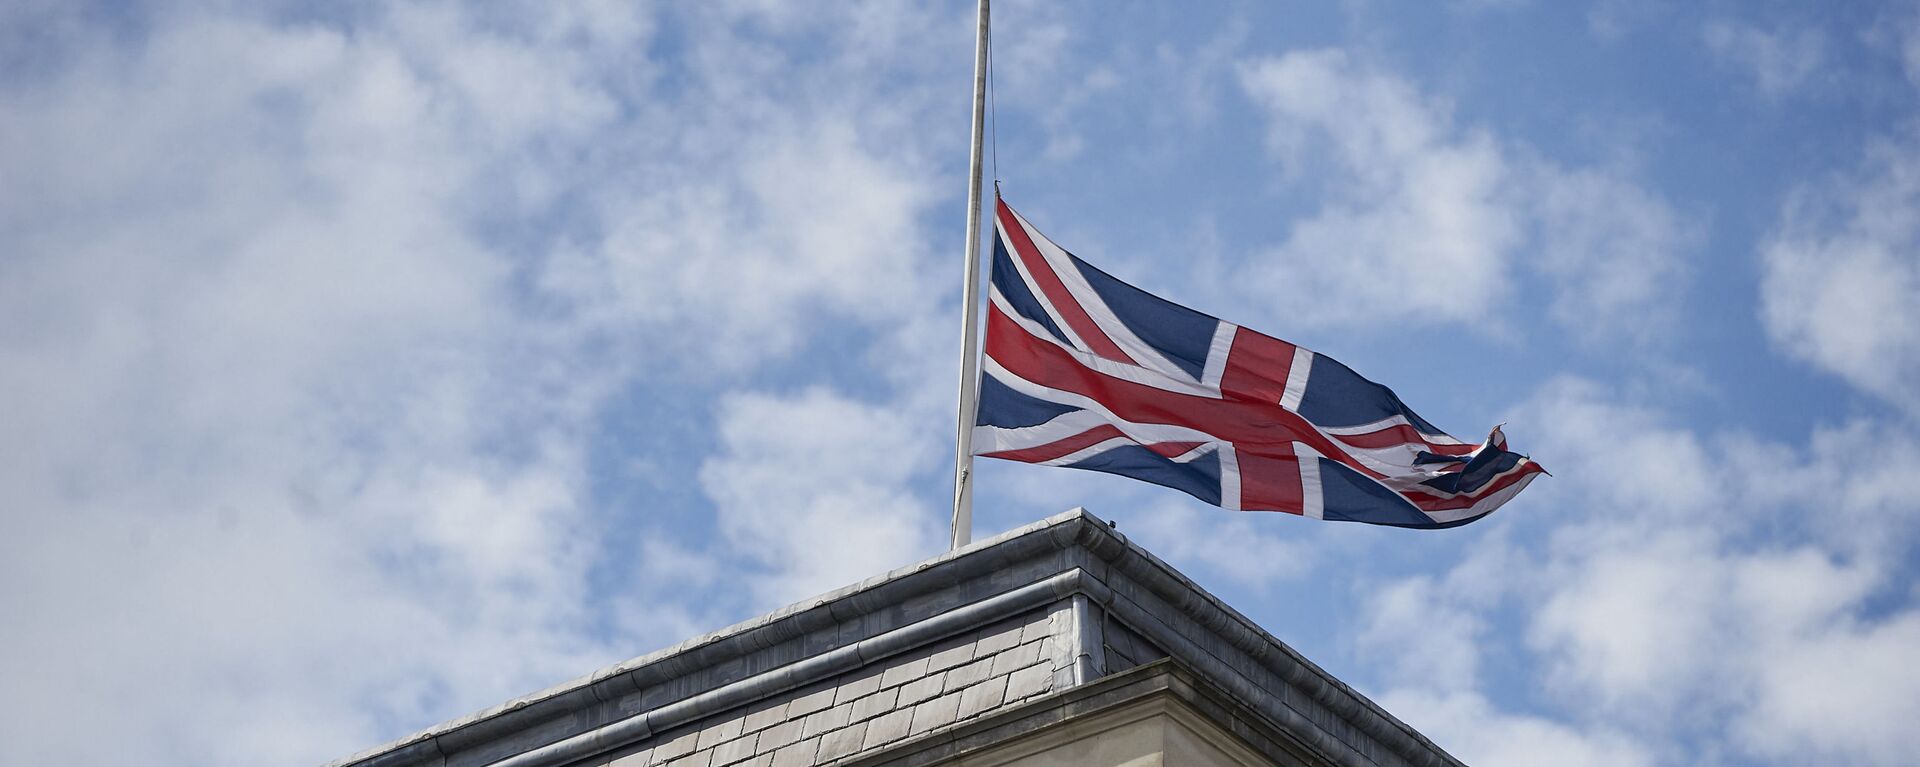 Quốc kỳ Anh trên tòa nhà Bộ Ngoại giao Anh ở London. - Sputnik Việt Nam, 1920, 25.12.2021